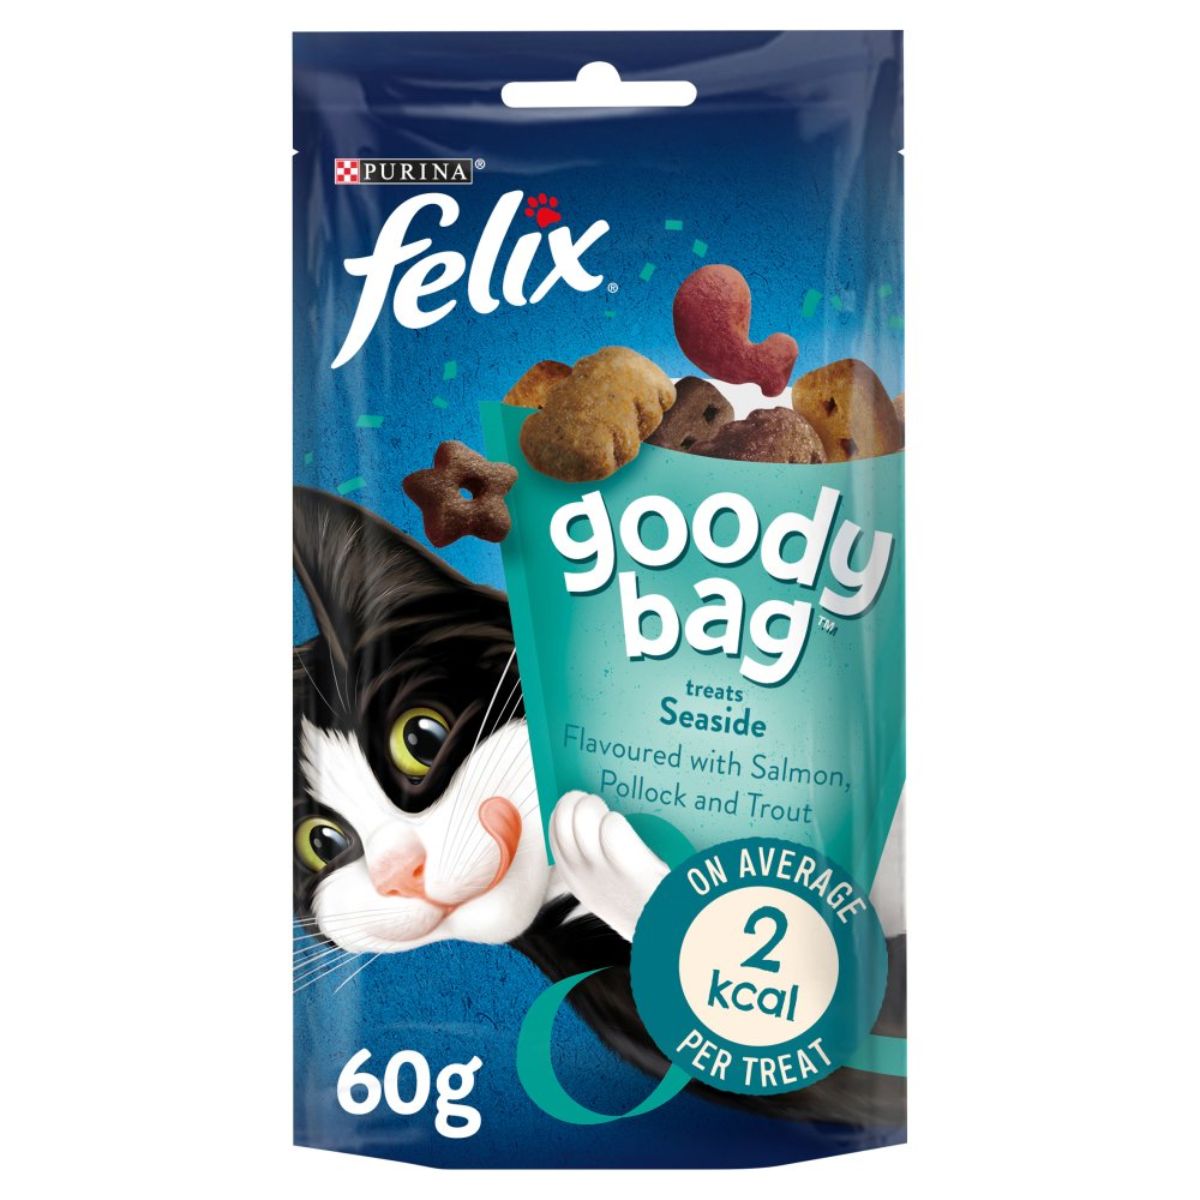 Purina - Felix Goody bag Seaside - 60g cat treats.